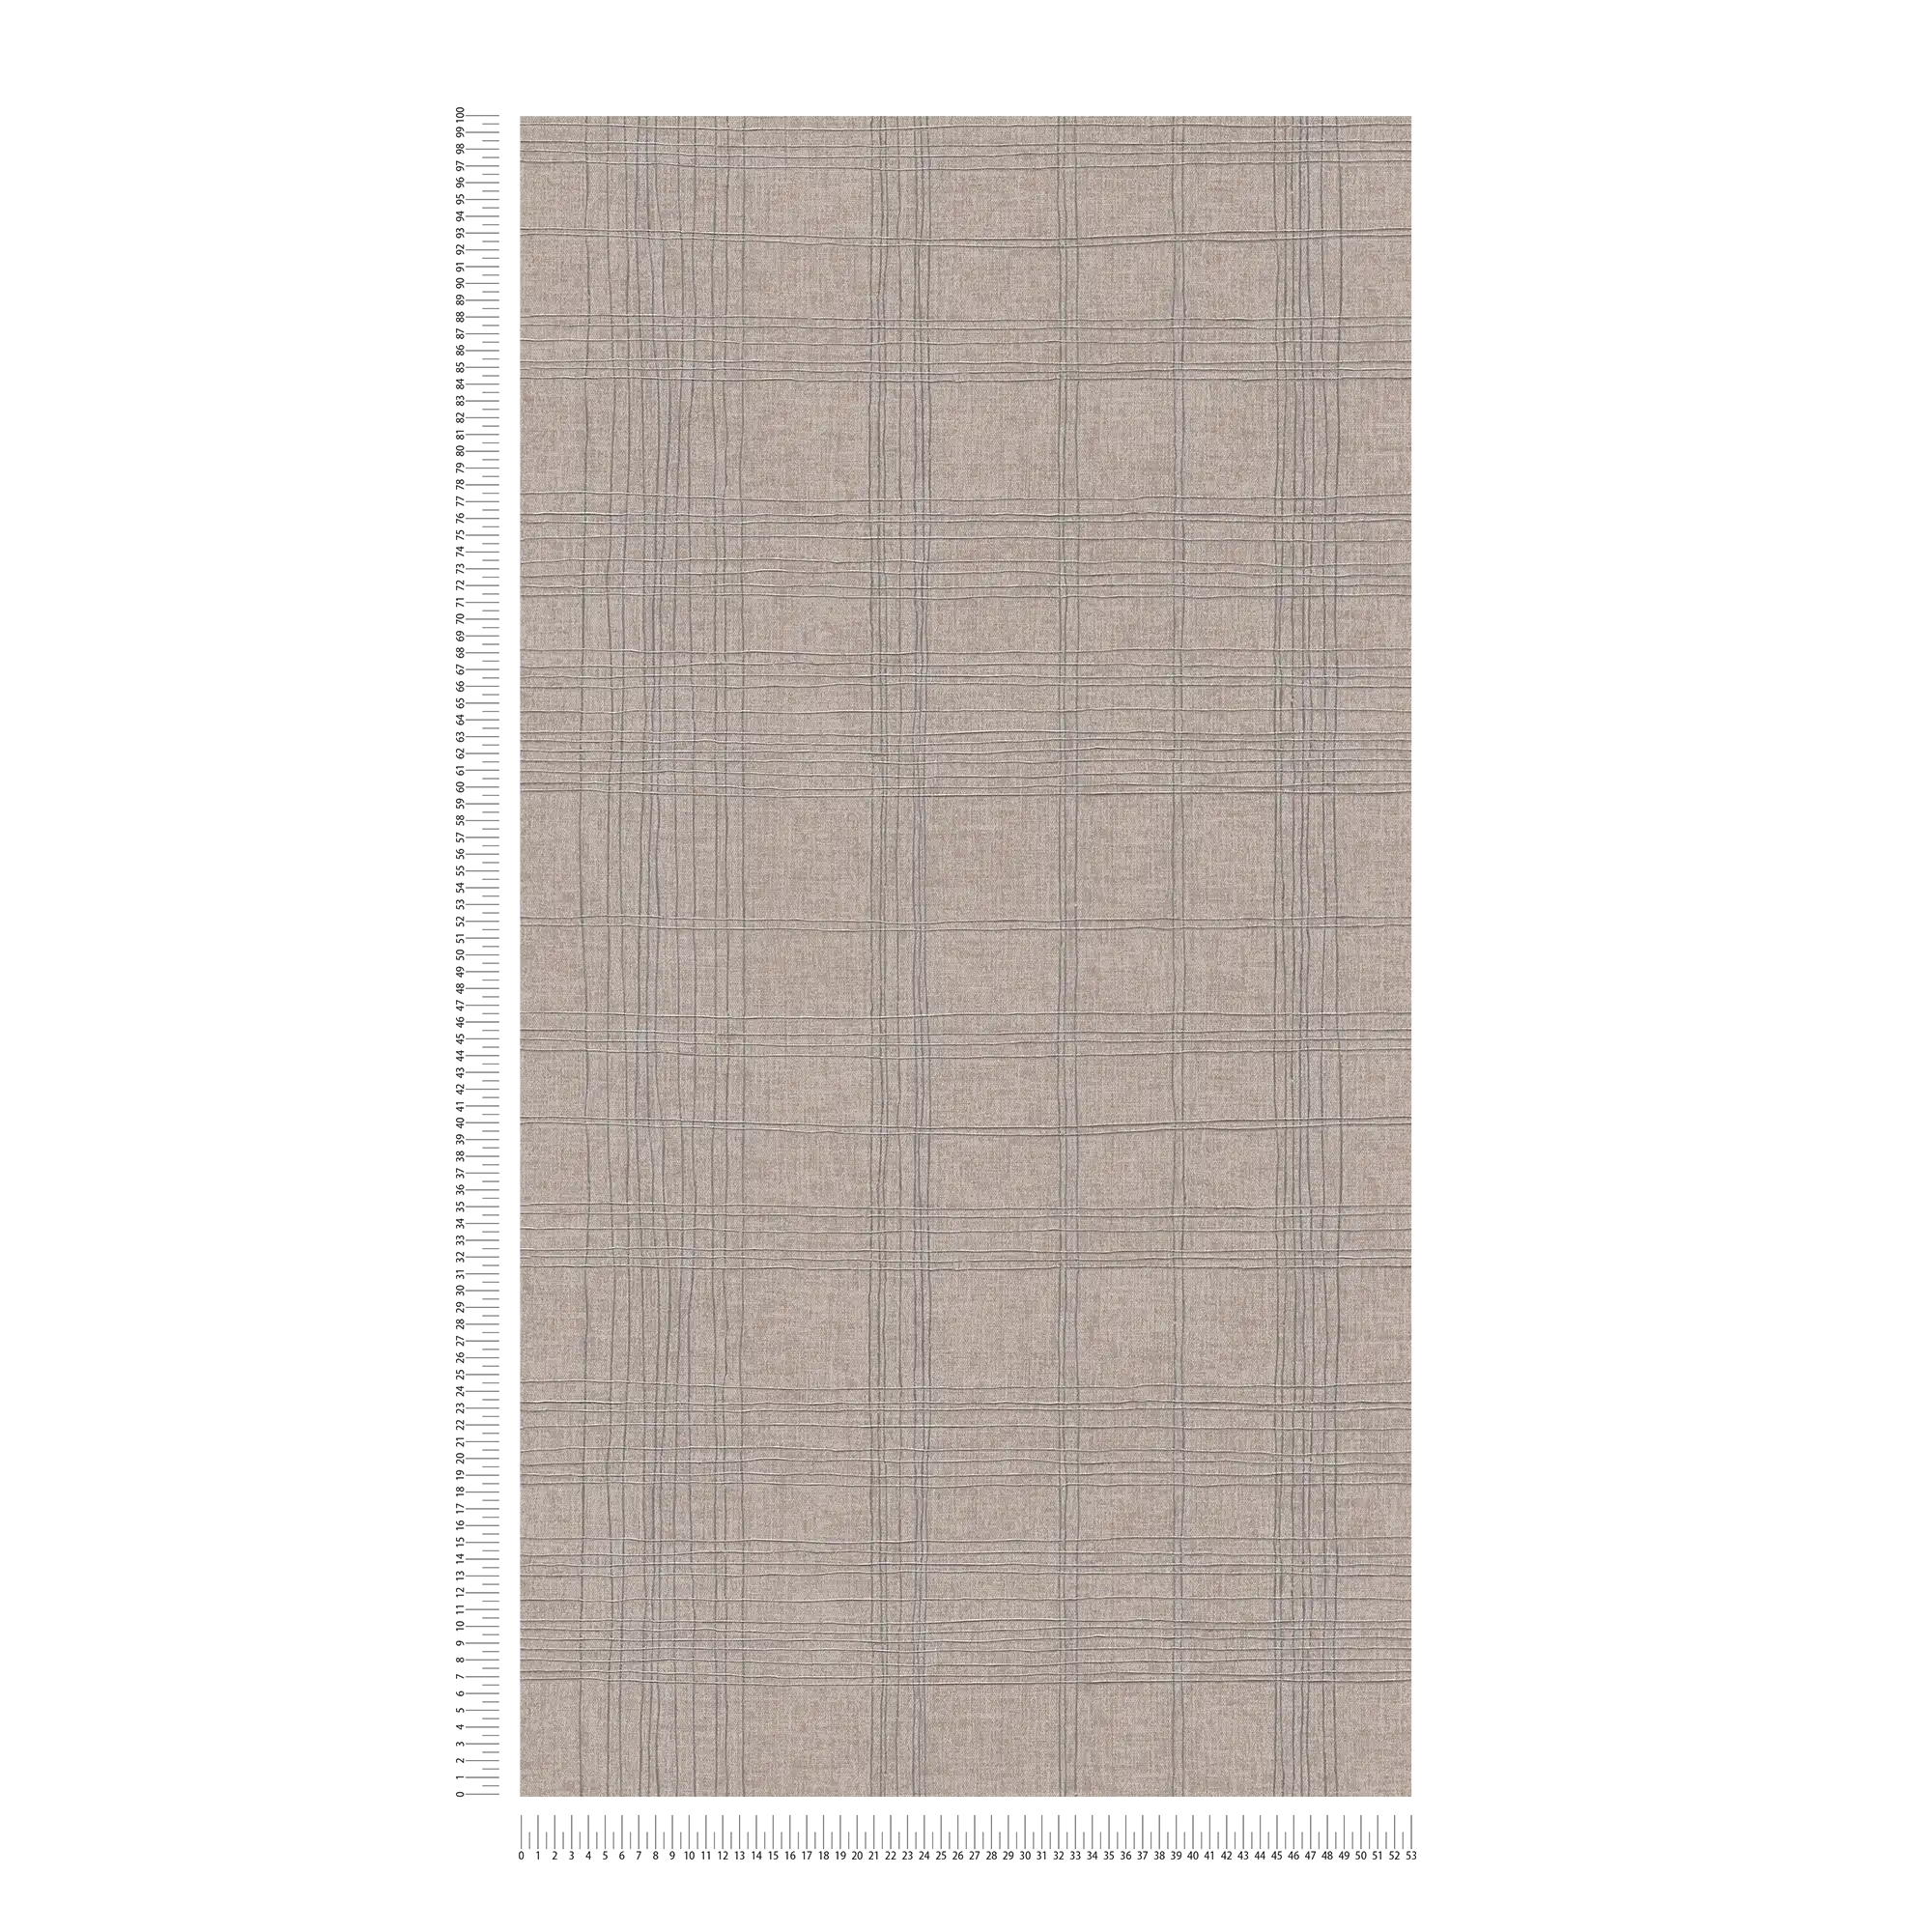             Carta da parati in tessuto non tessuto con motivo a linee con effetto metallizzato - beige, metallizzato
        